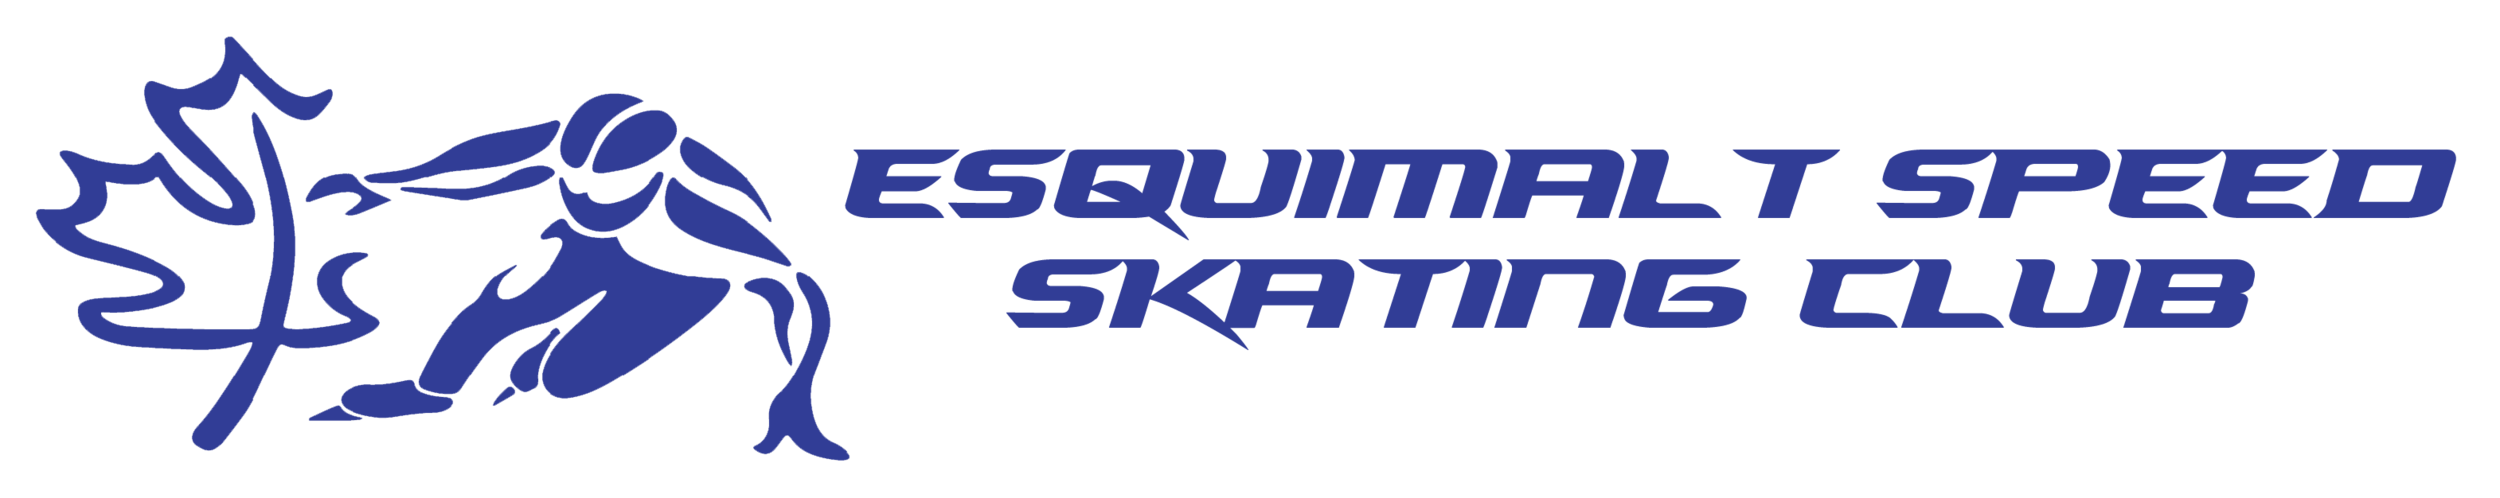 Esquimalt Speed Skating Club